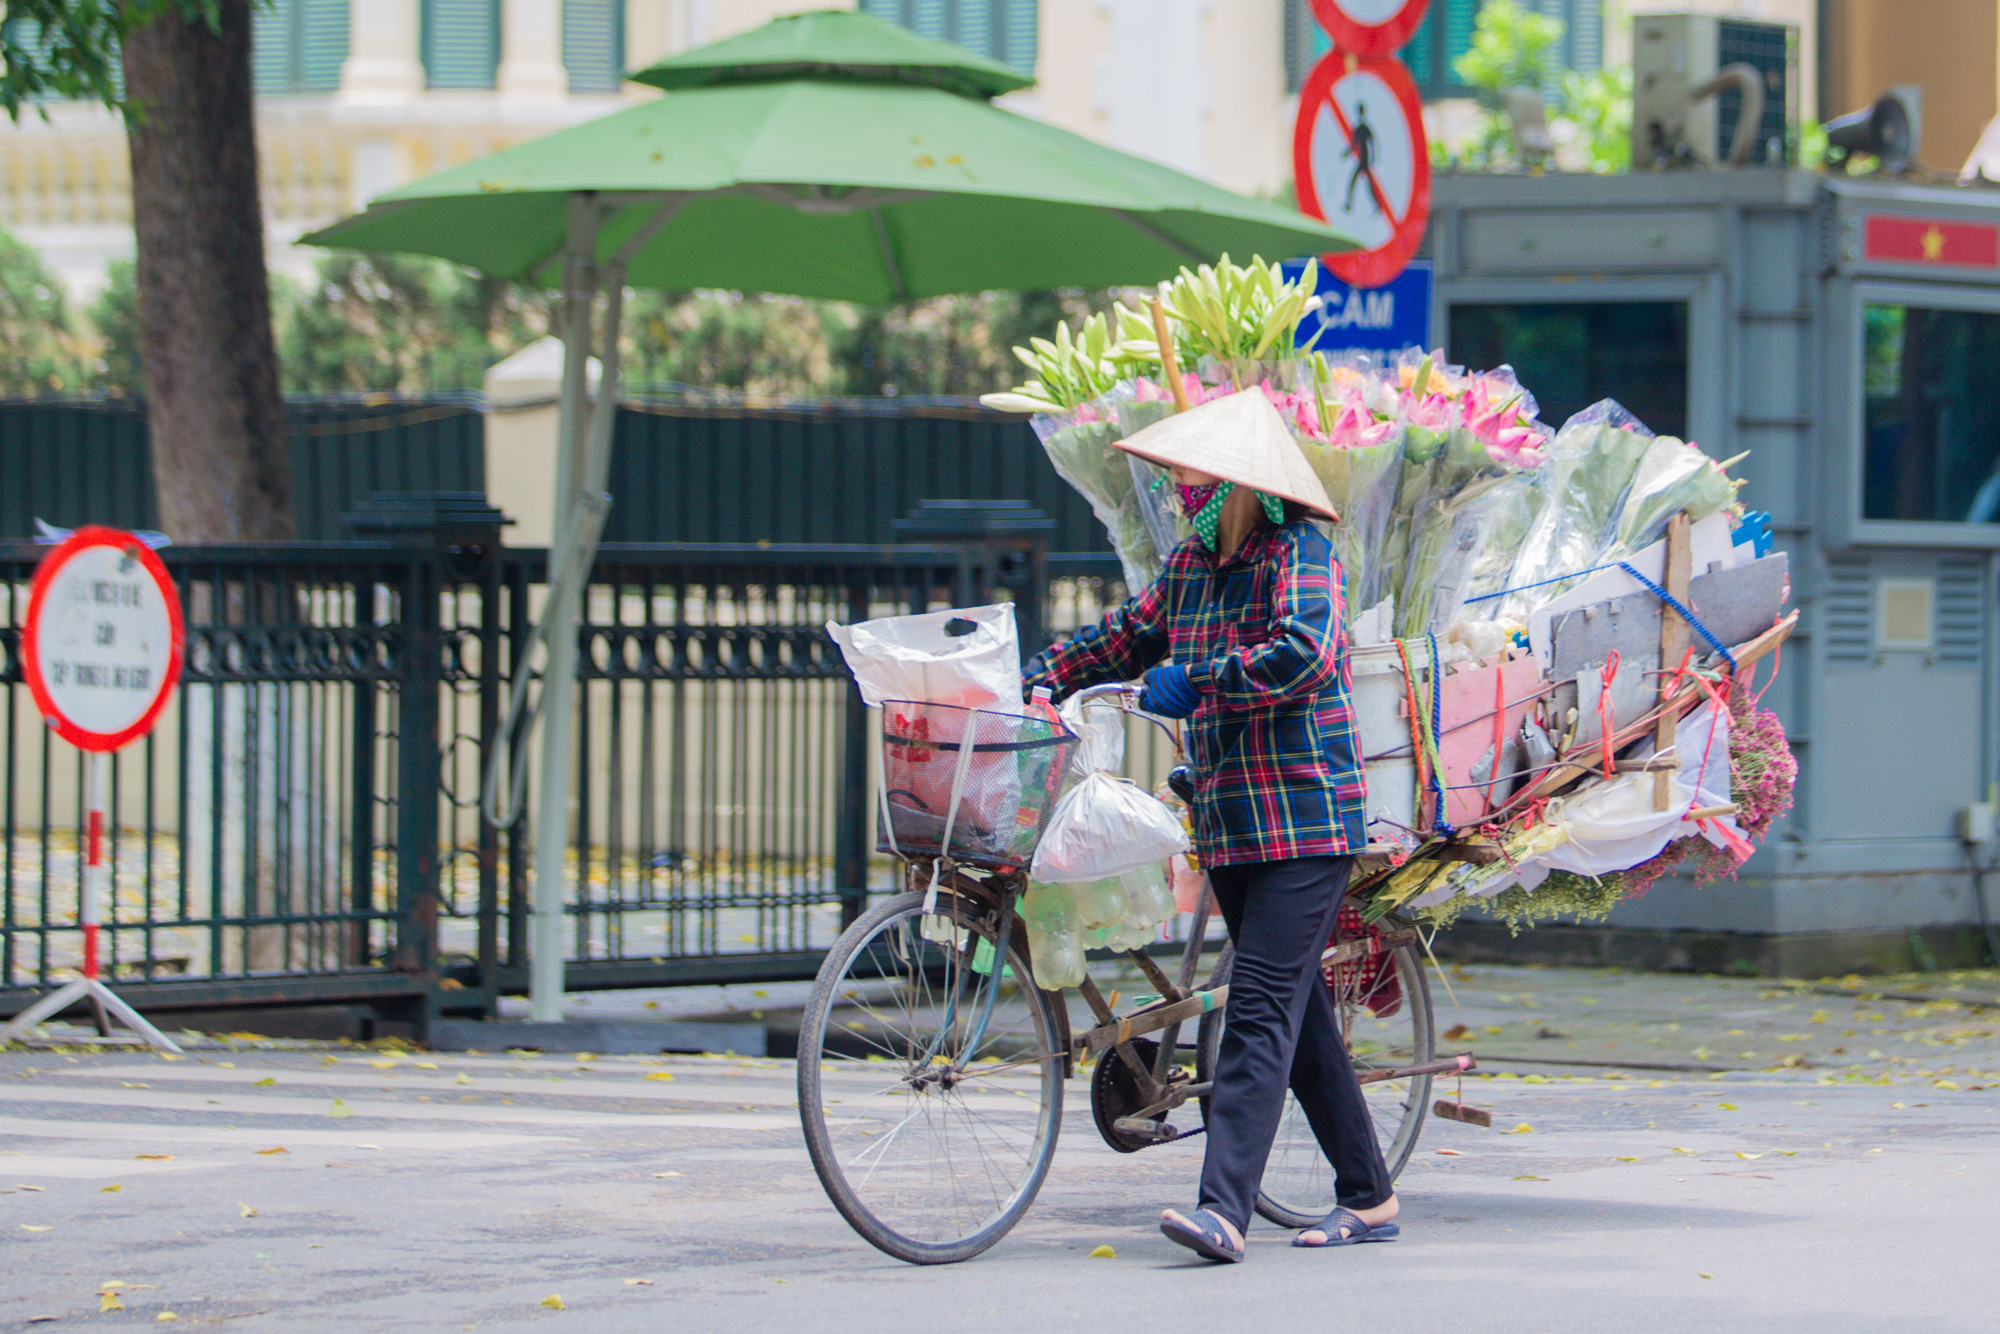 Hoa sen là biểu tượng của sự thanh lịch, tinh tế và thanh cao trong văn hóa Việt Nam. Hãy ngắm nhìn hình ảnh này để nhìn thấy sự đẹp mộng mơ của hoa sen, truyền cảm hứng và tinh thần trong cuộc sống hàng ngày của bạn.